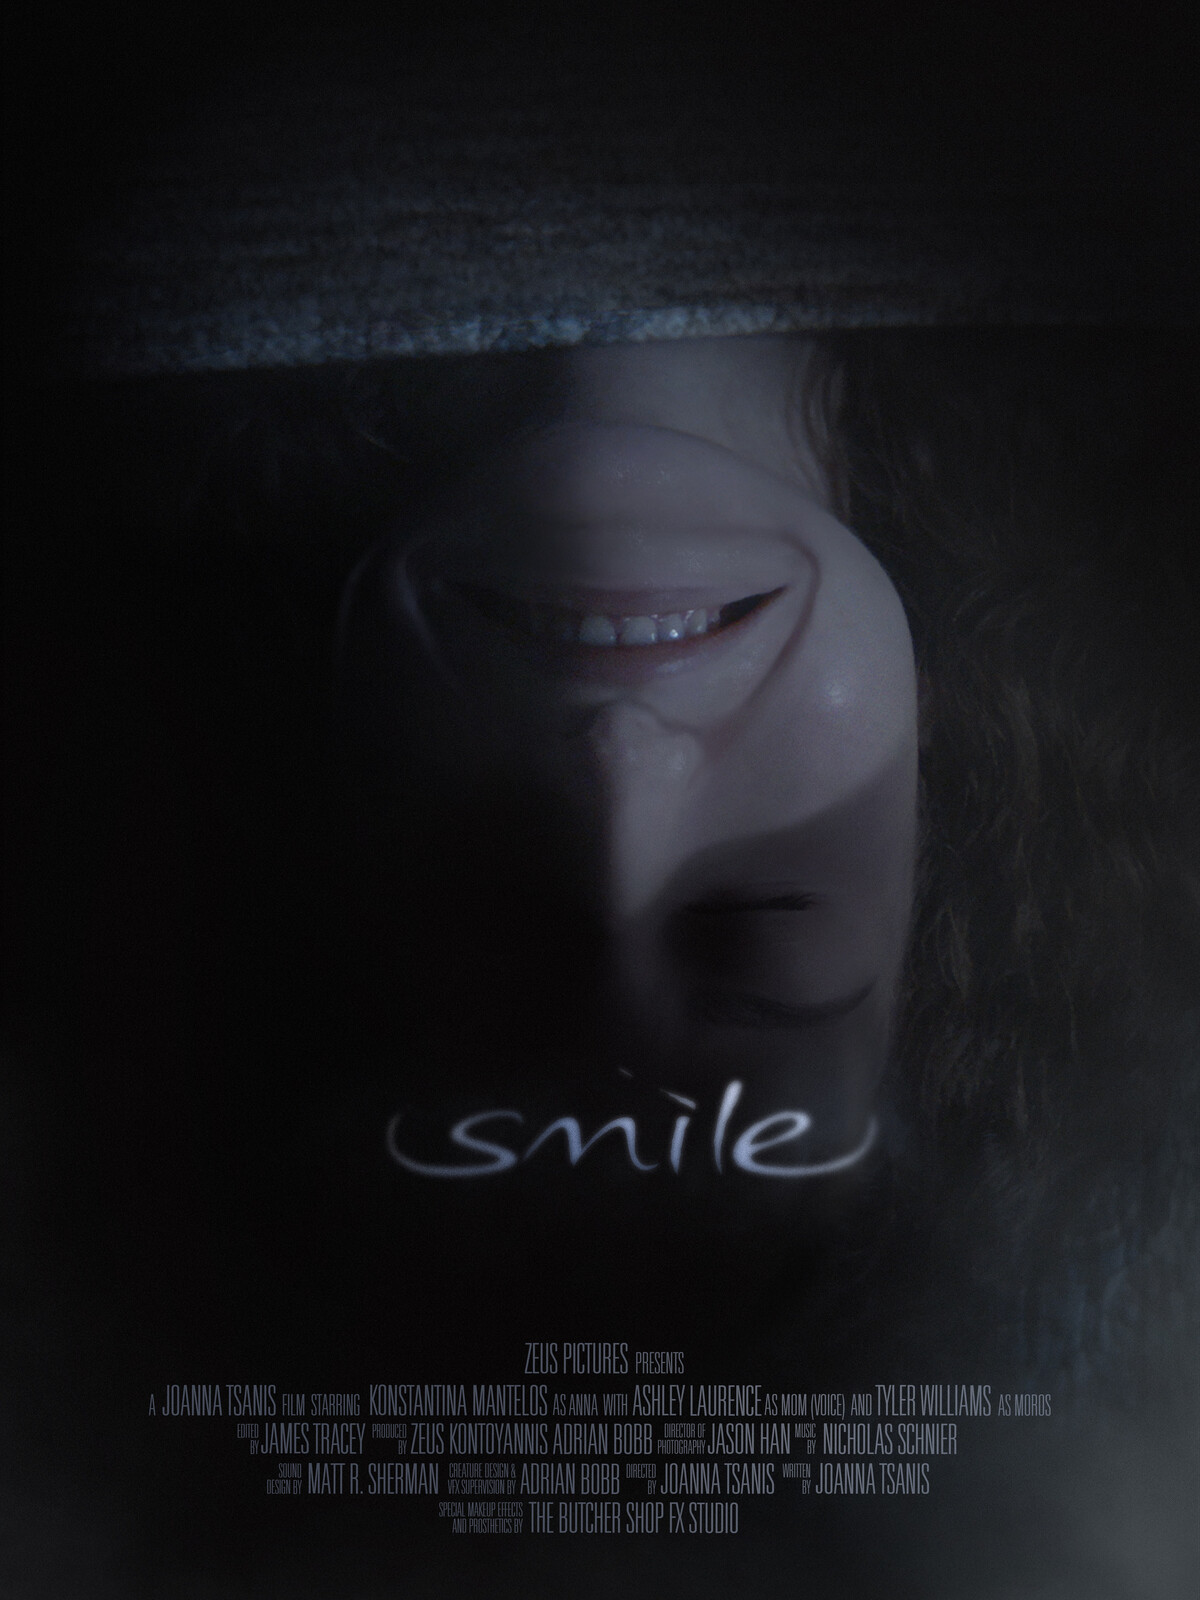 Smile Short Film "Moros Monster Design"